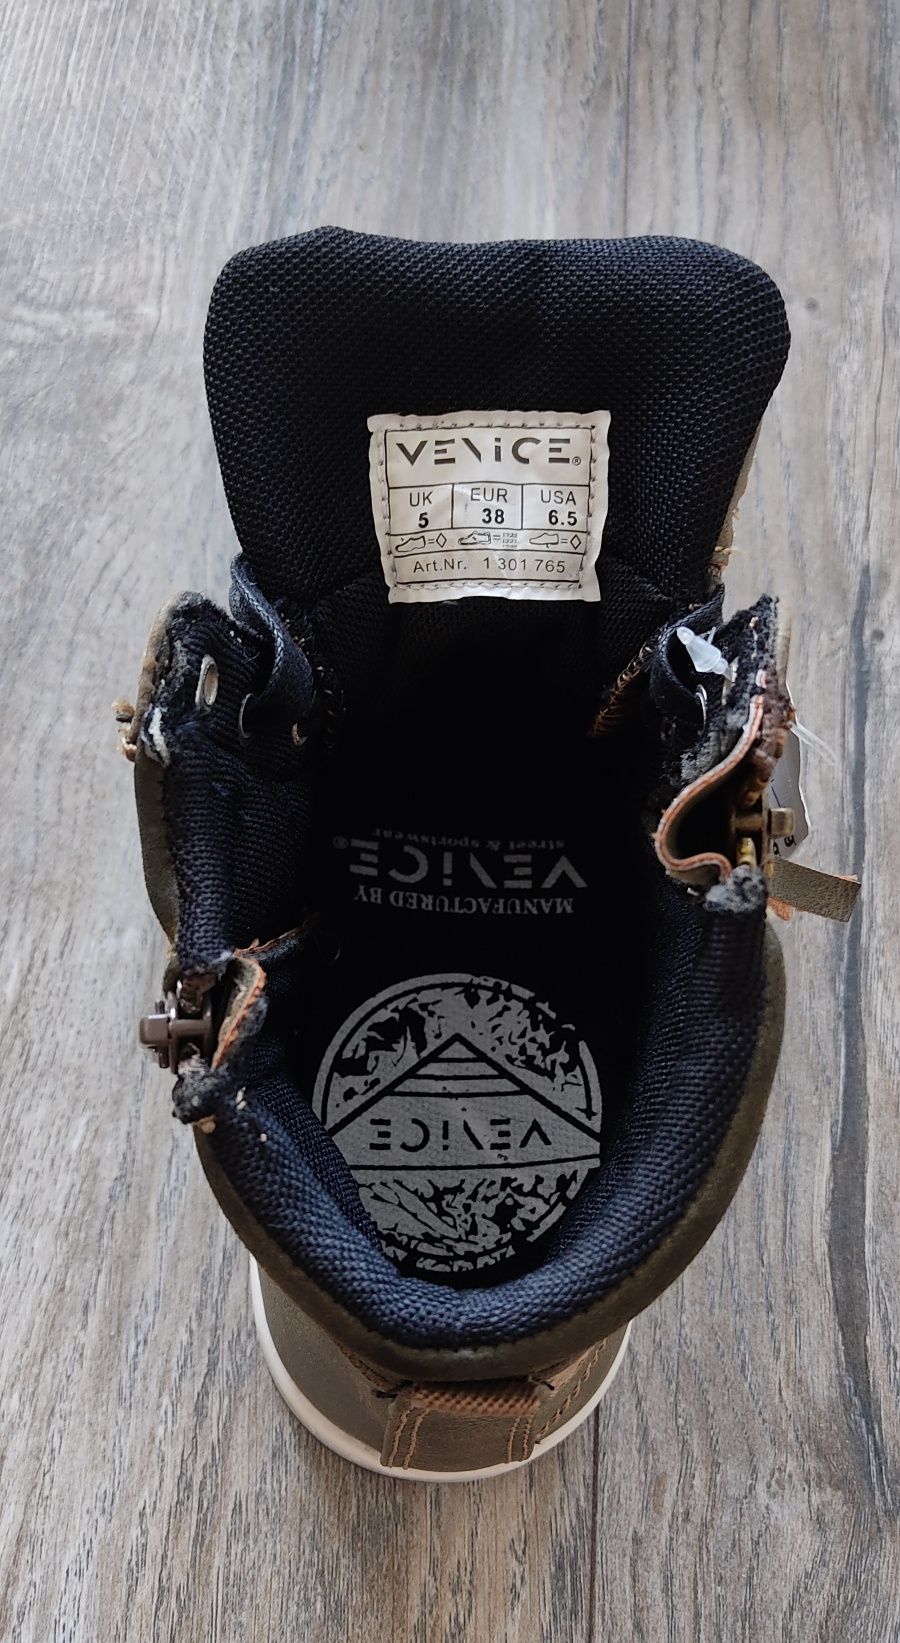 Nowe buty Venice